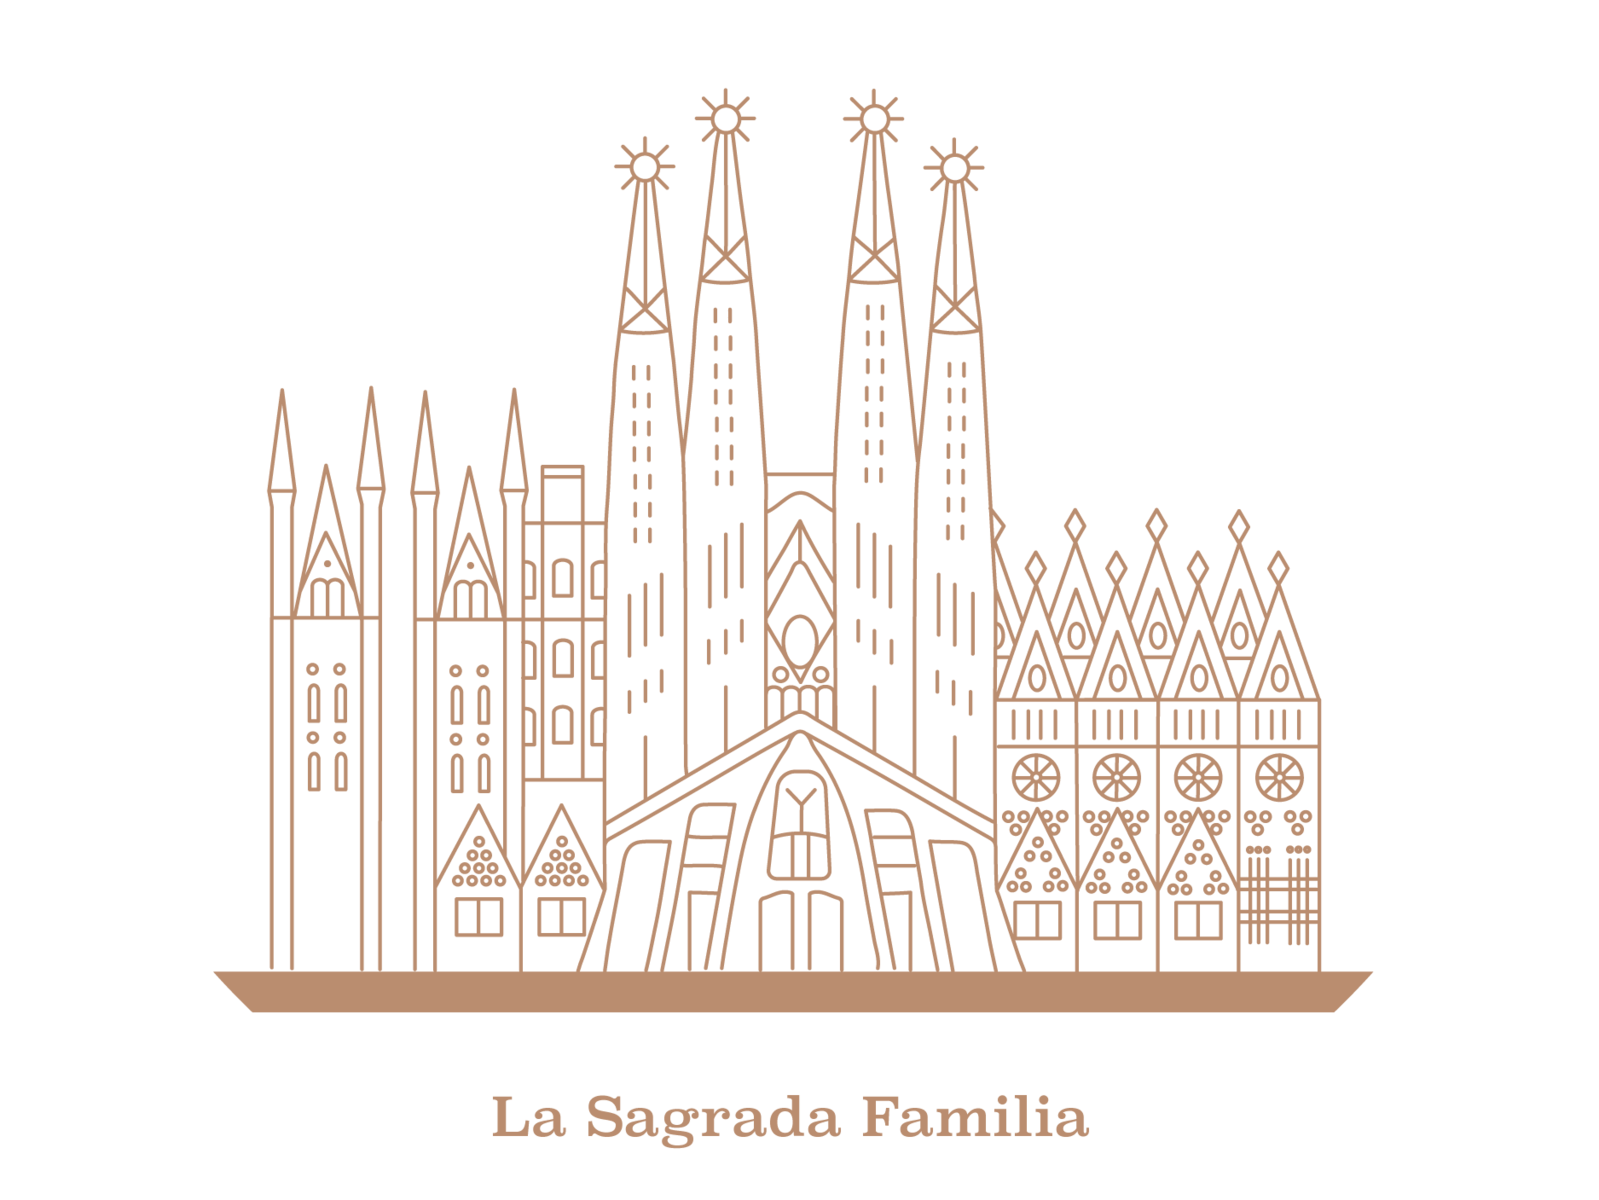 La Sagrada Familia Icon by Sümeyye Doruk on Dribbble